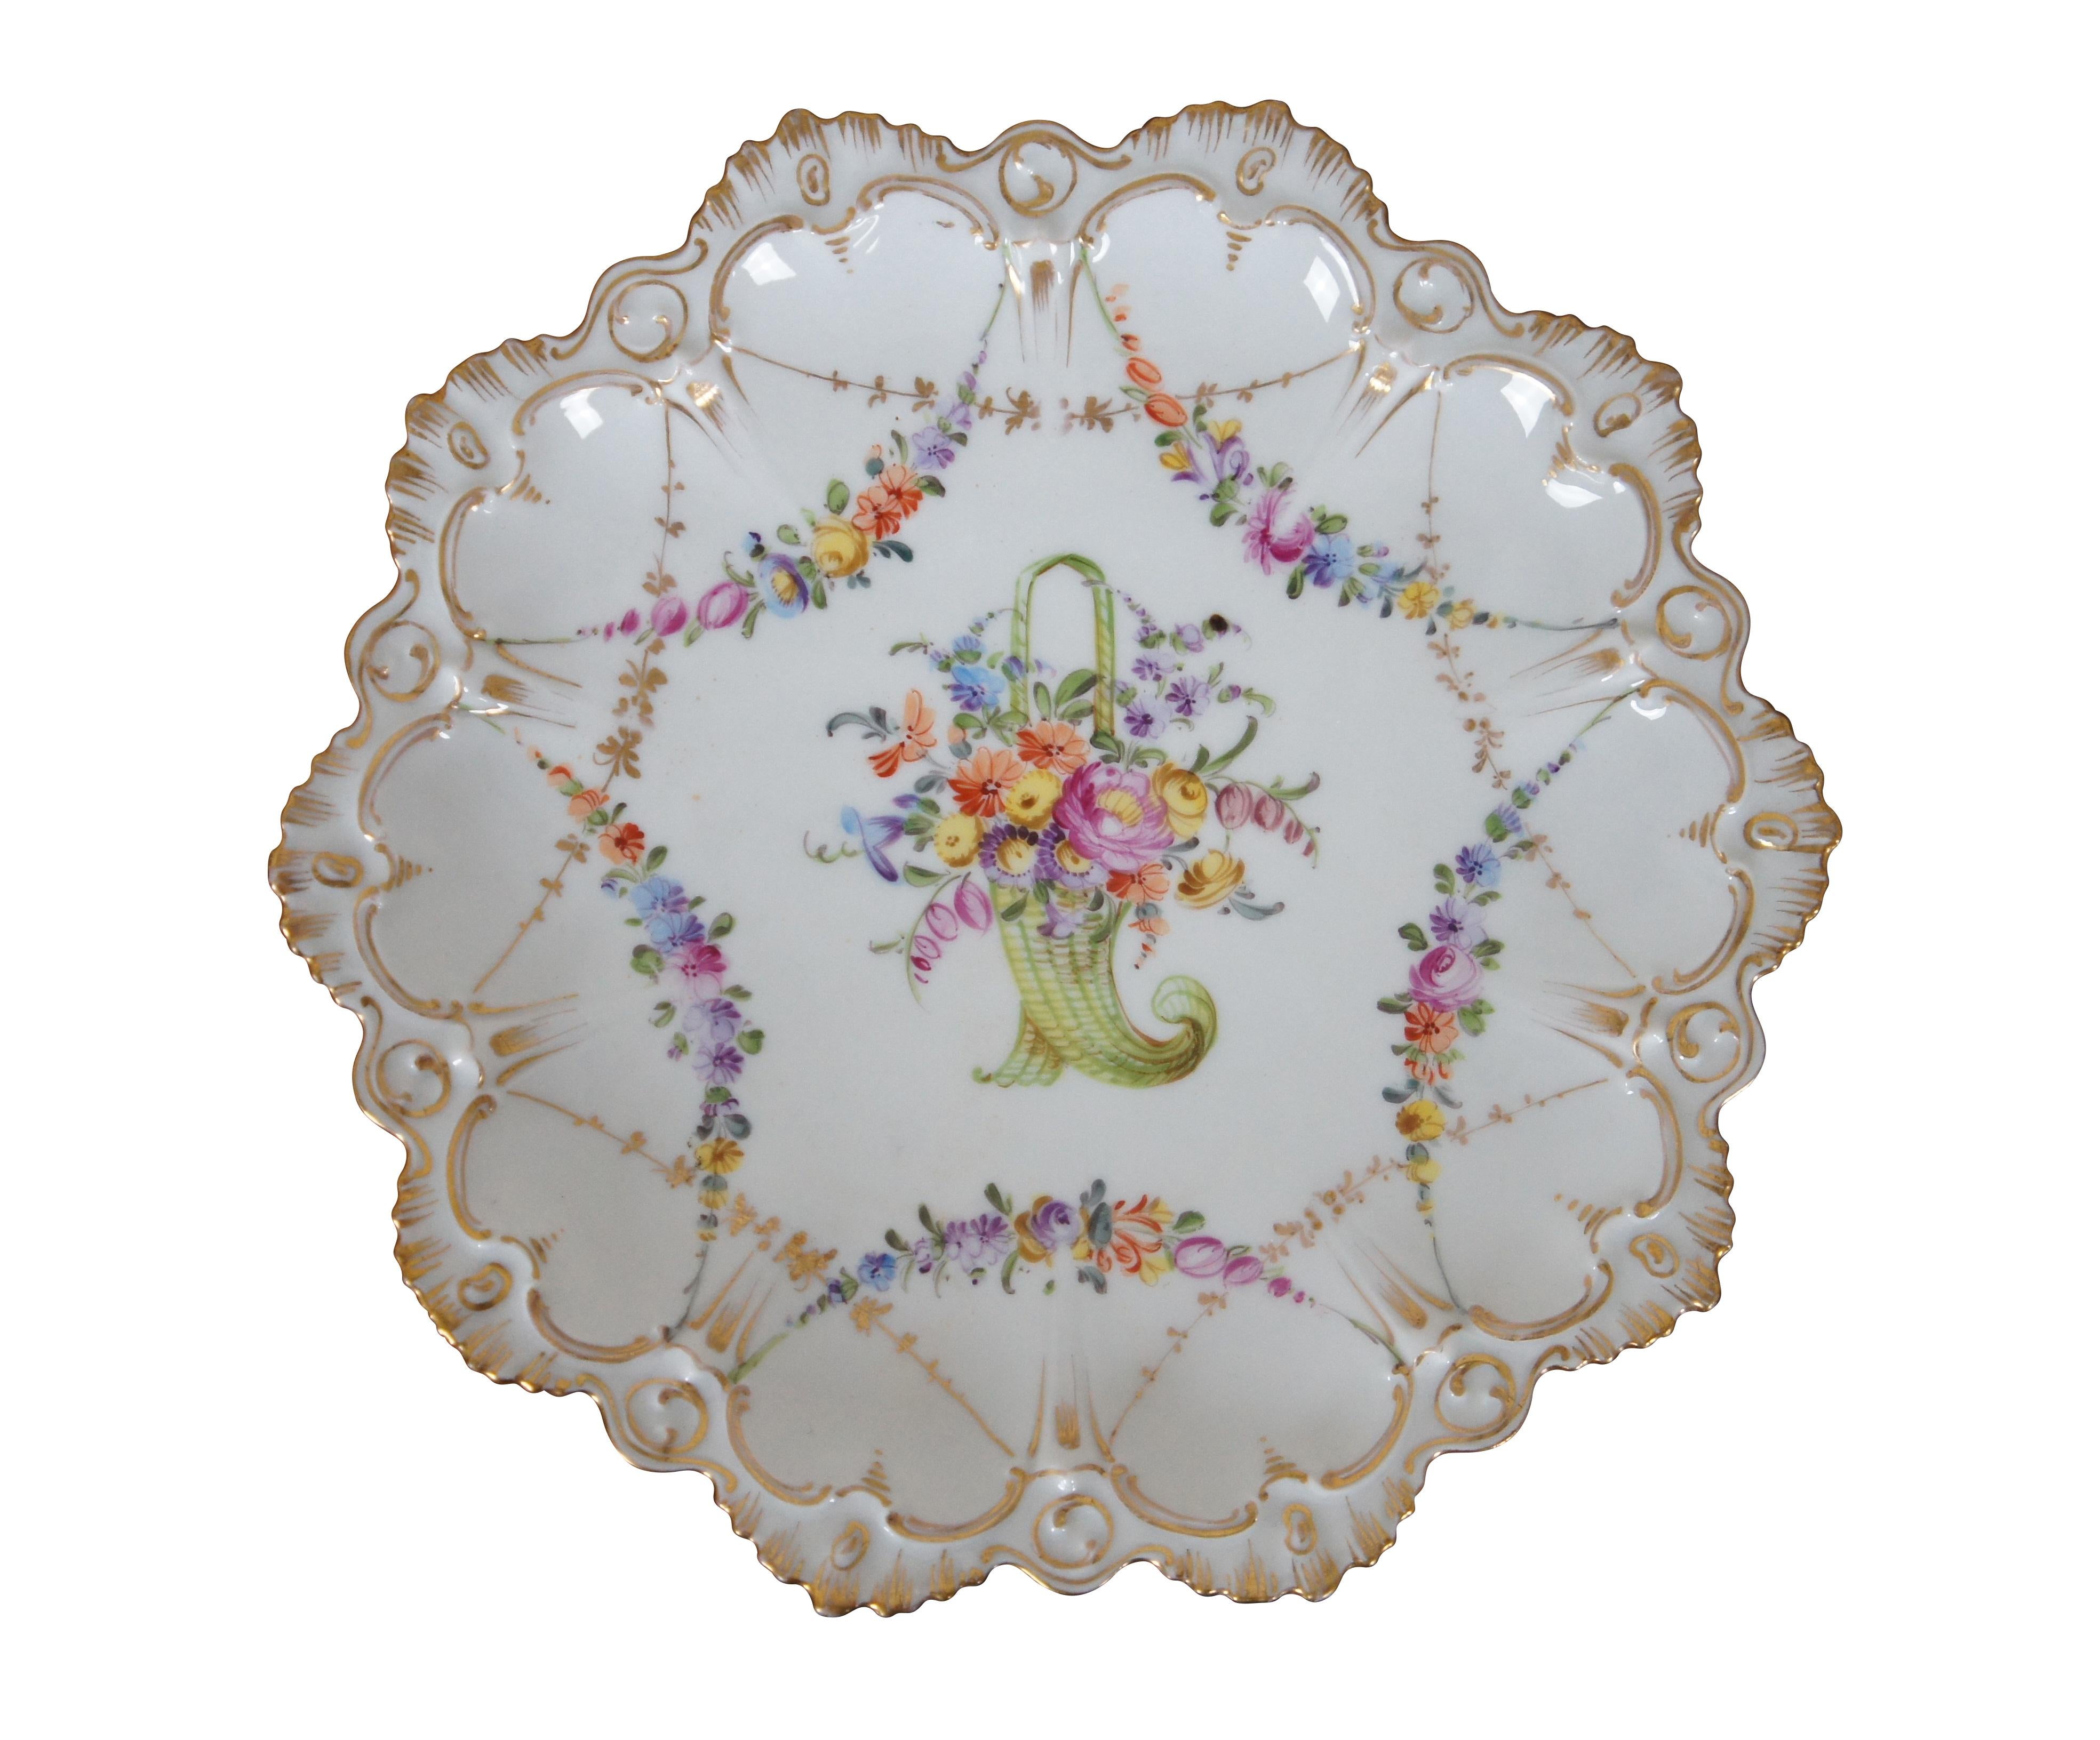 Paire d'assiettes à bord festonné de Hirsch.  Elle est ornée d'un magnifique motif floral polychrome.

Blanc produit par MZ Austria (marque recouverte sur la base). Numéro incisé 933.

